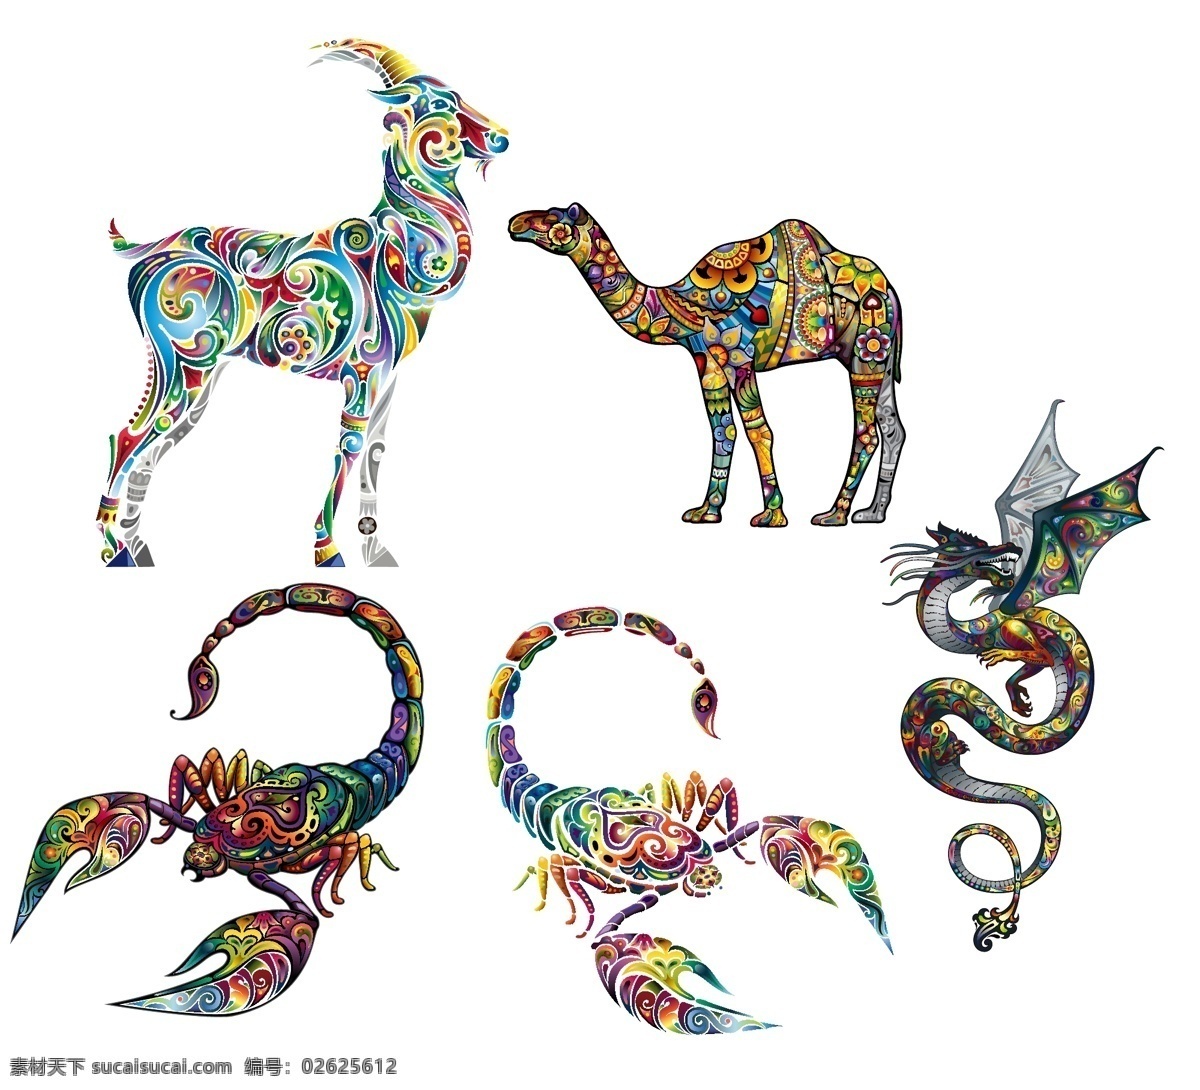 彩色动物图案 彩色动物 纹身刺青图案 矢量素材 矢量图 创意设计 彩色 炫彩 炫丽 刺青 纹身 花纹 图案 动物 骆驼 蝎子 羚羊 飞龙